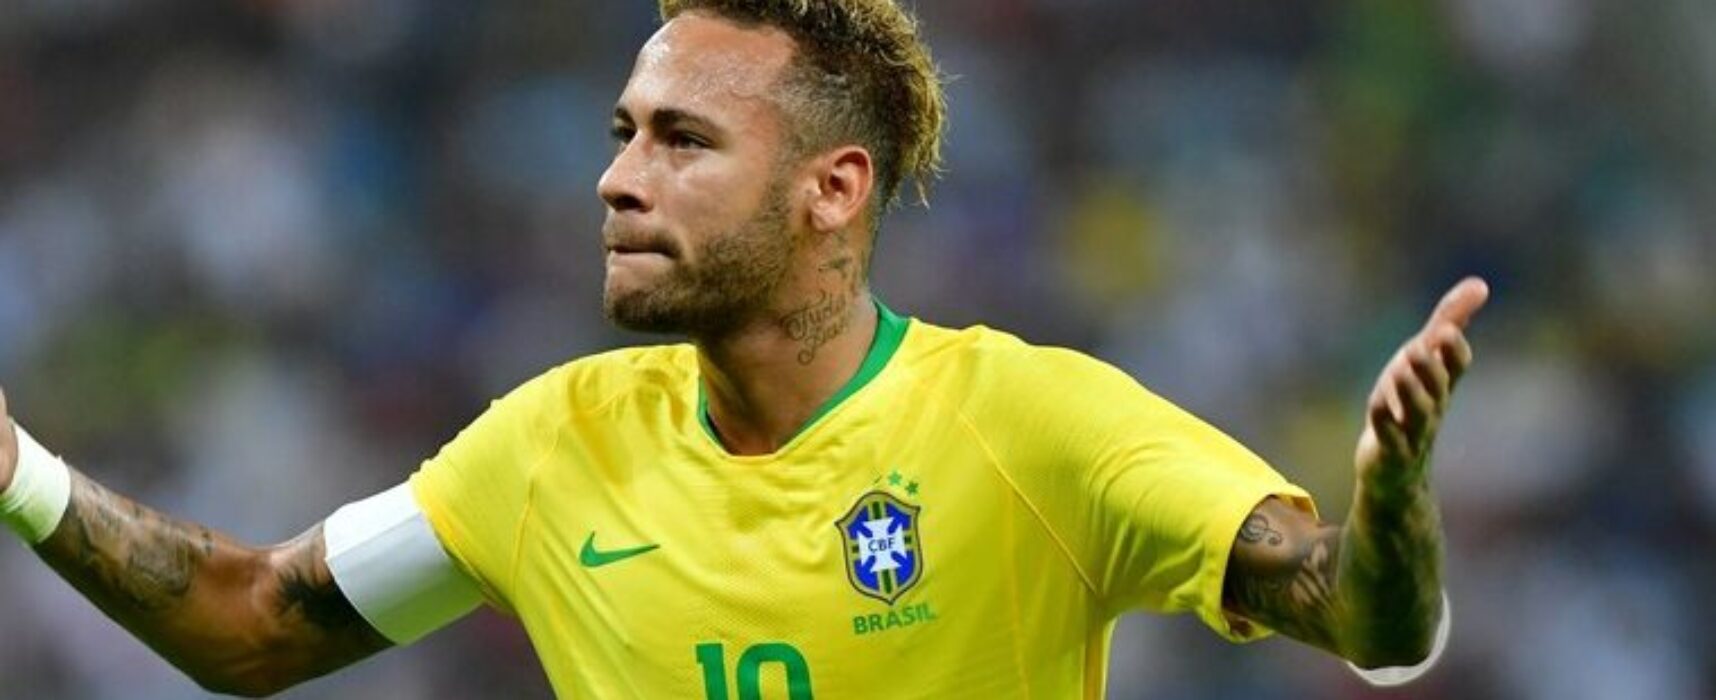 Tostão daria seu lugar a Neymar em 70: ‘É um dos maiores’